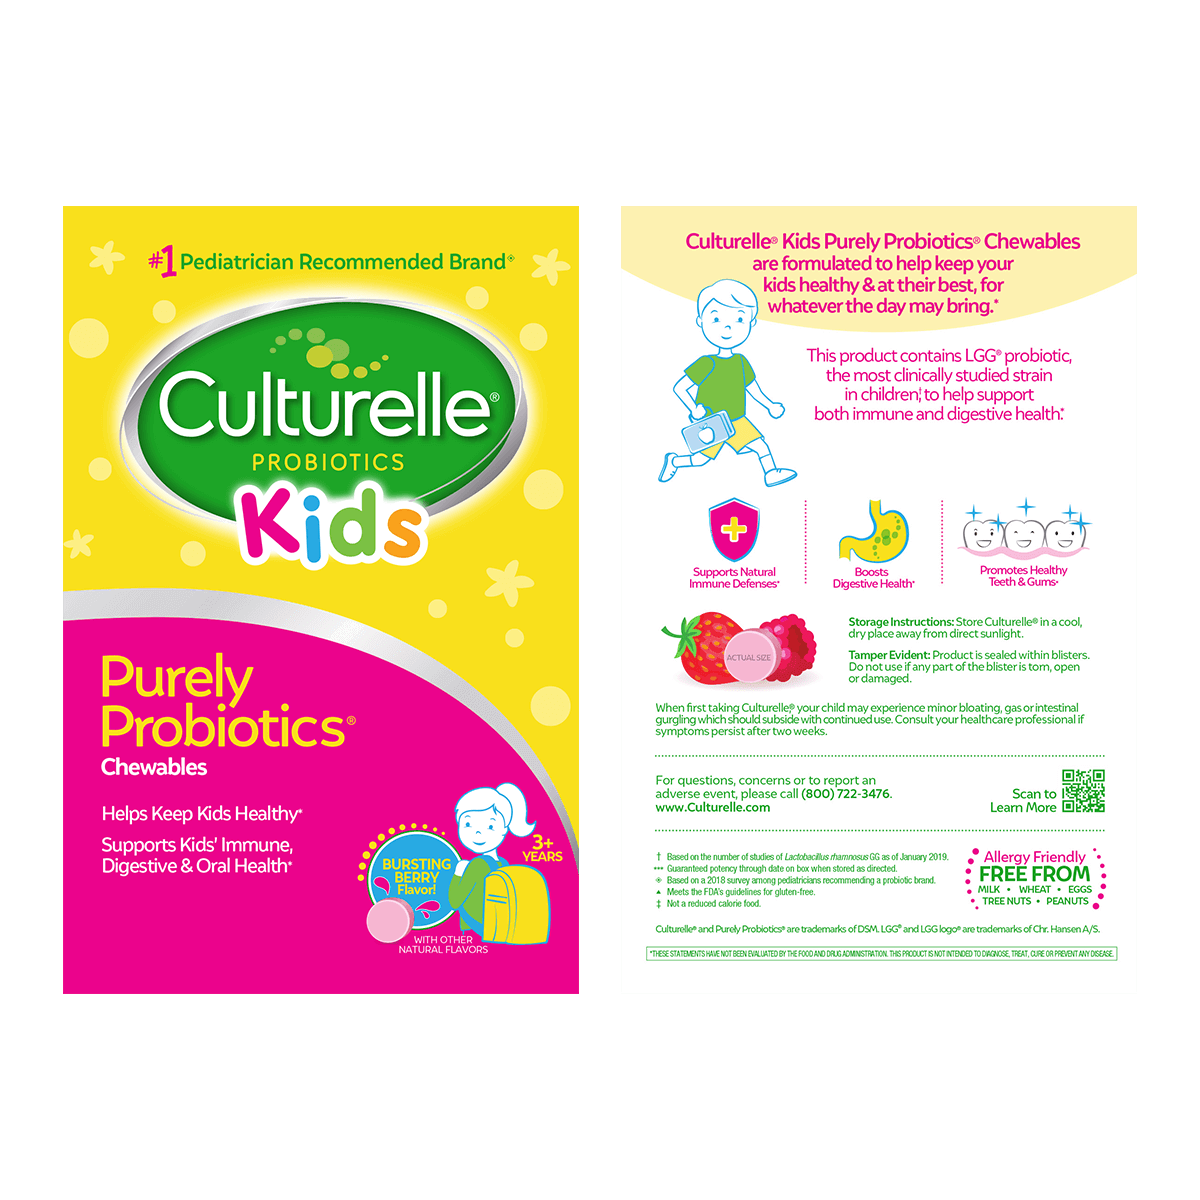 Culturelle® Probiotic Family Bundle